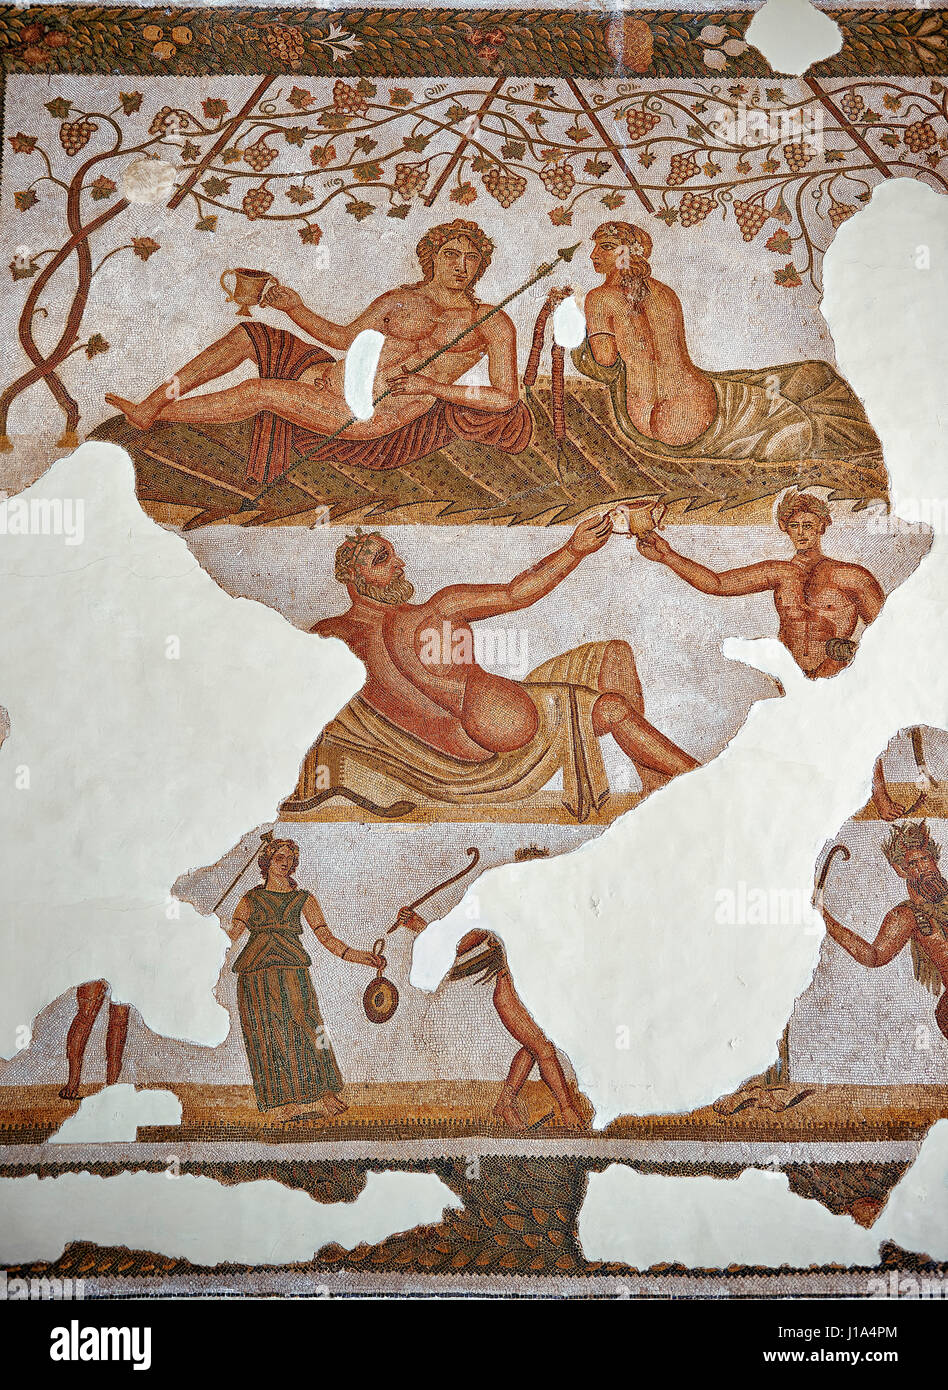 Mosaïque romaine de célébrer le mariage du dieu Dionysos pour Ariadene. La fin du 3e siècle, Thurbo majus. Mosaïque romaine de l'Afrique du Nord pr romain Banque D'Images